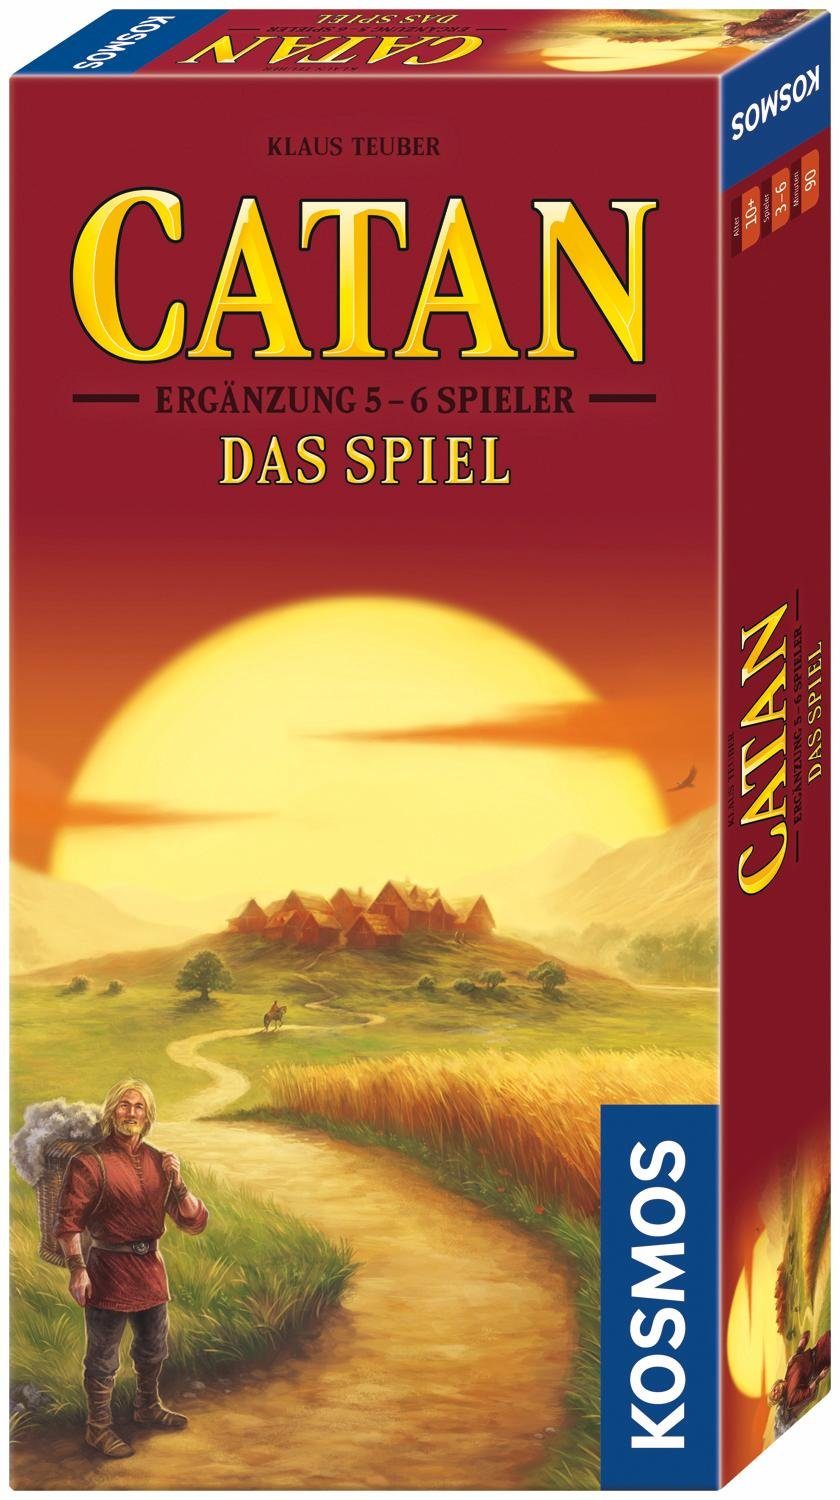 Image of Die Siedler von Catan - Ergänzung 5-6 Spieler: Das Spiel